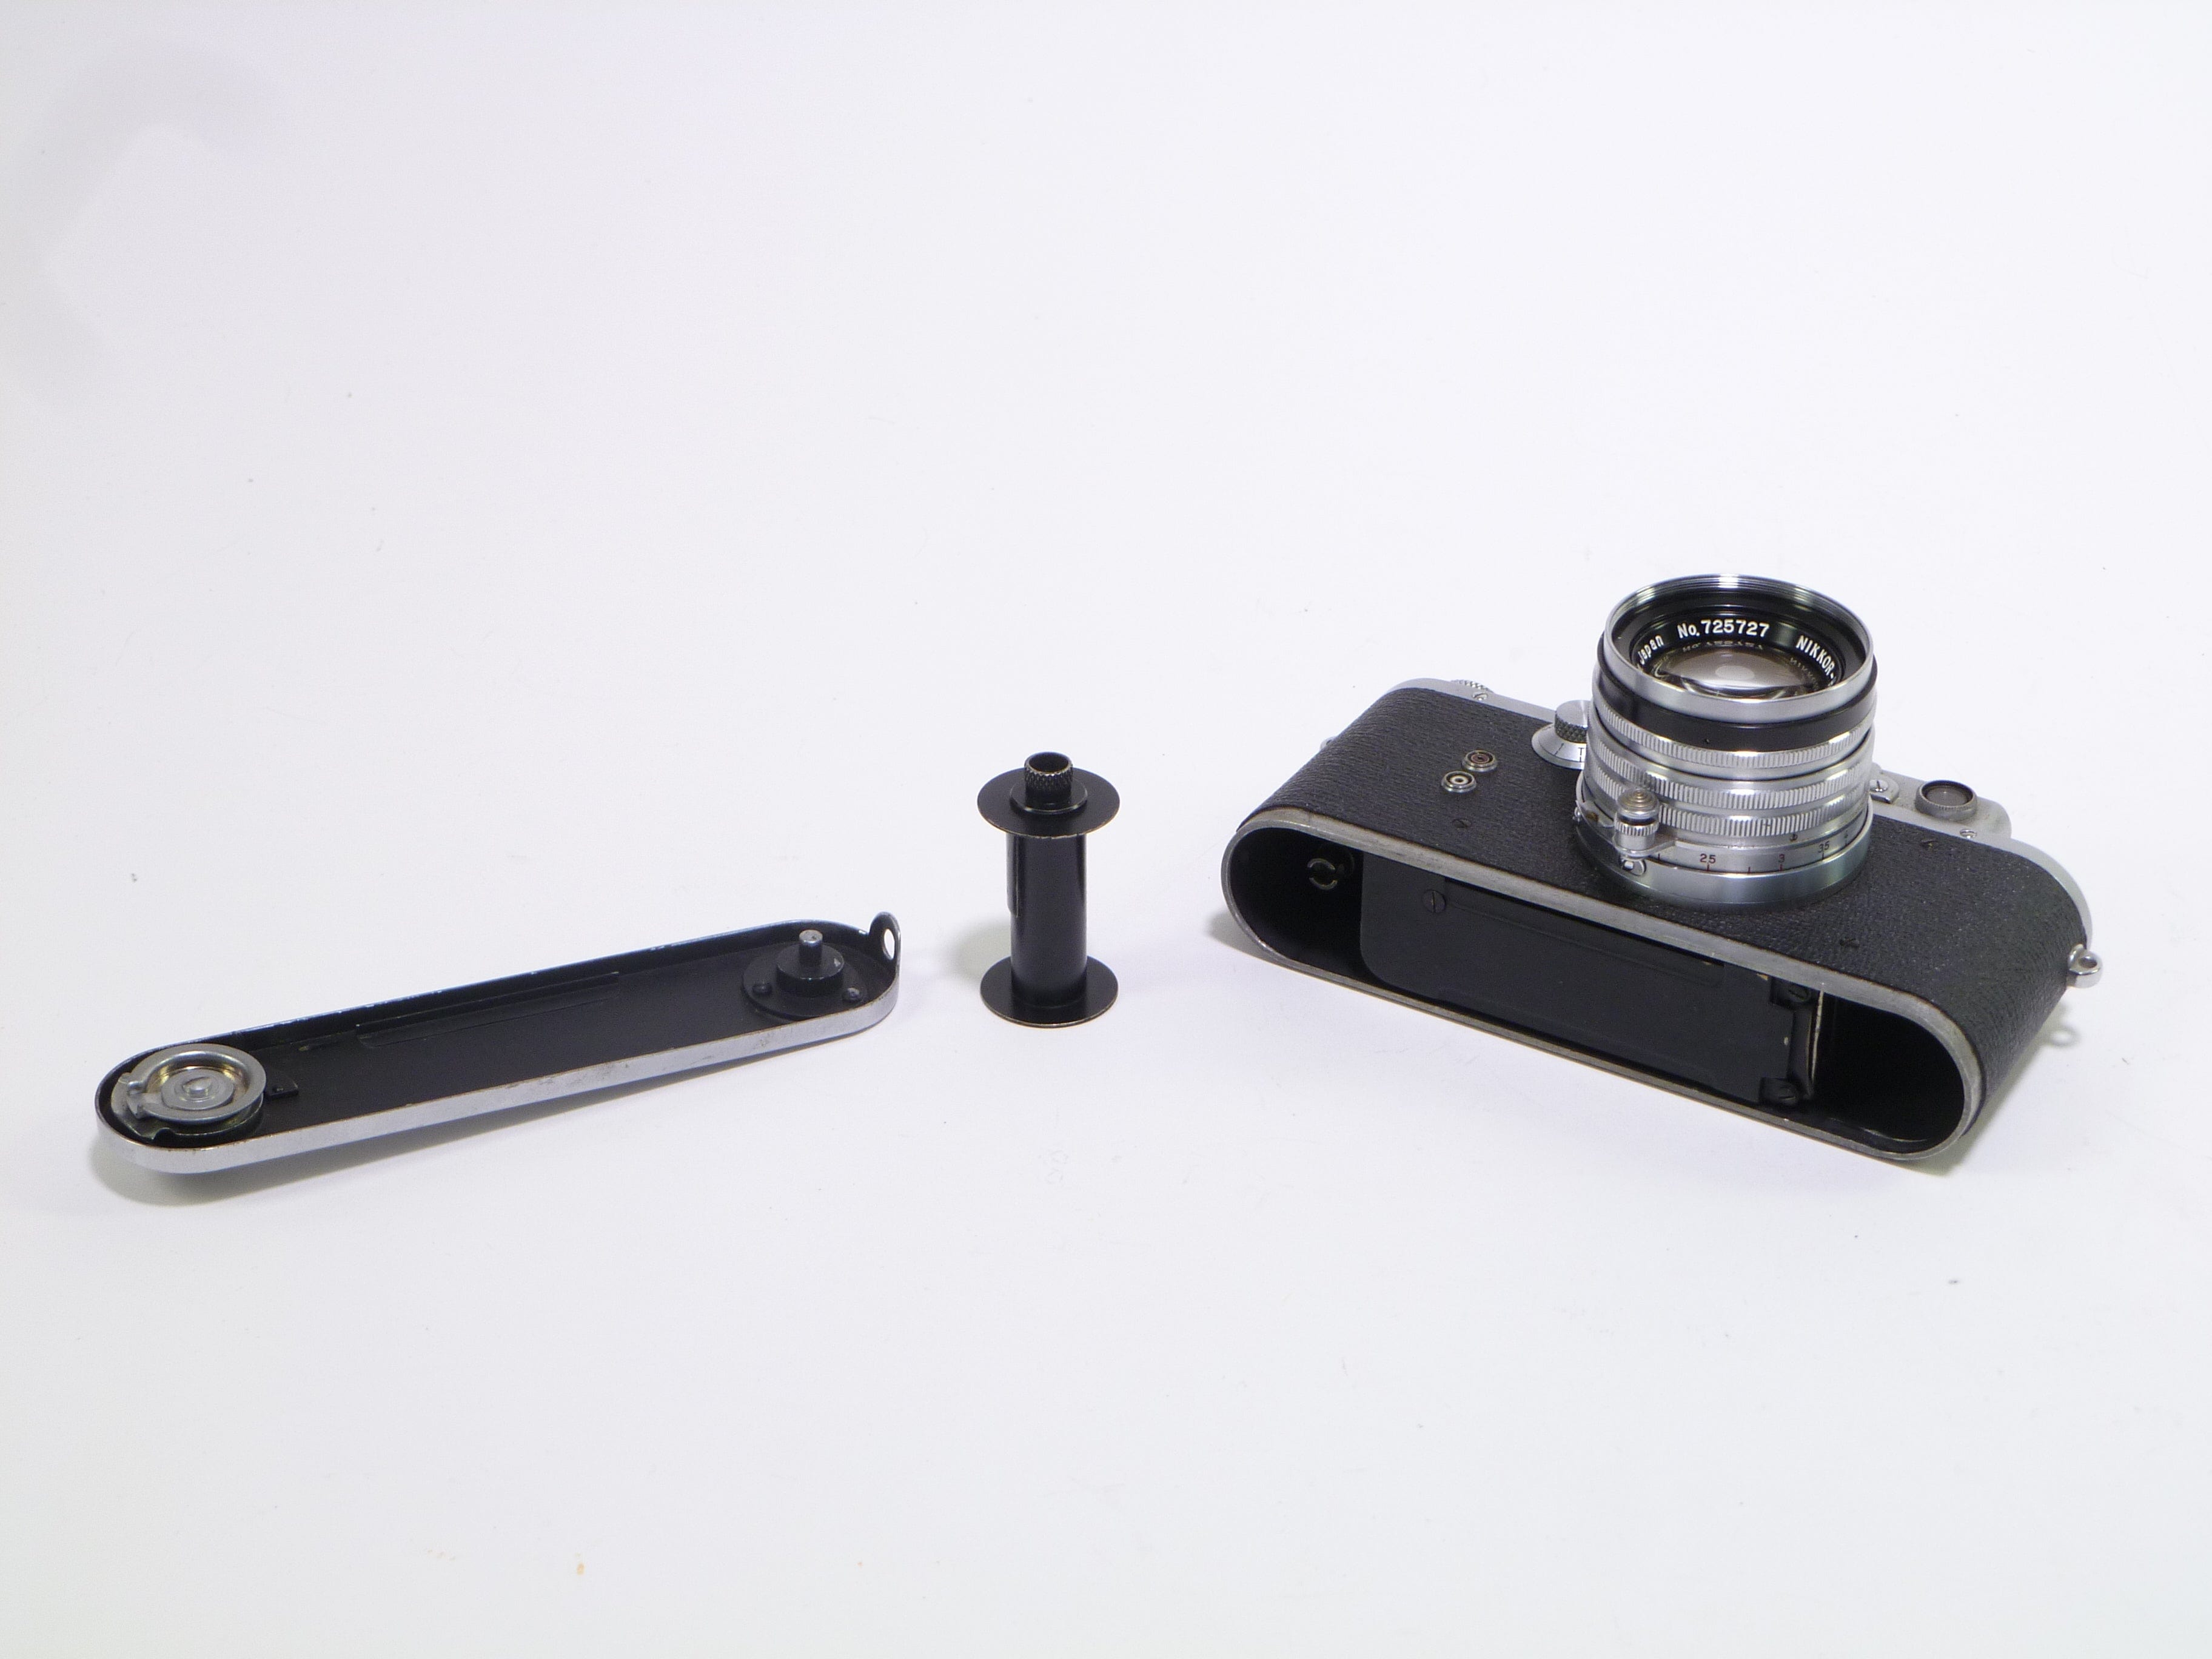 Nicca Type III S Rangefinder Camera w/ Nikkor-H.C 5cm F2 Lens 